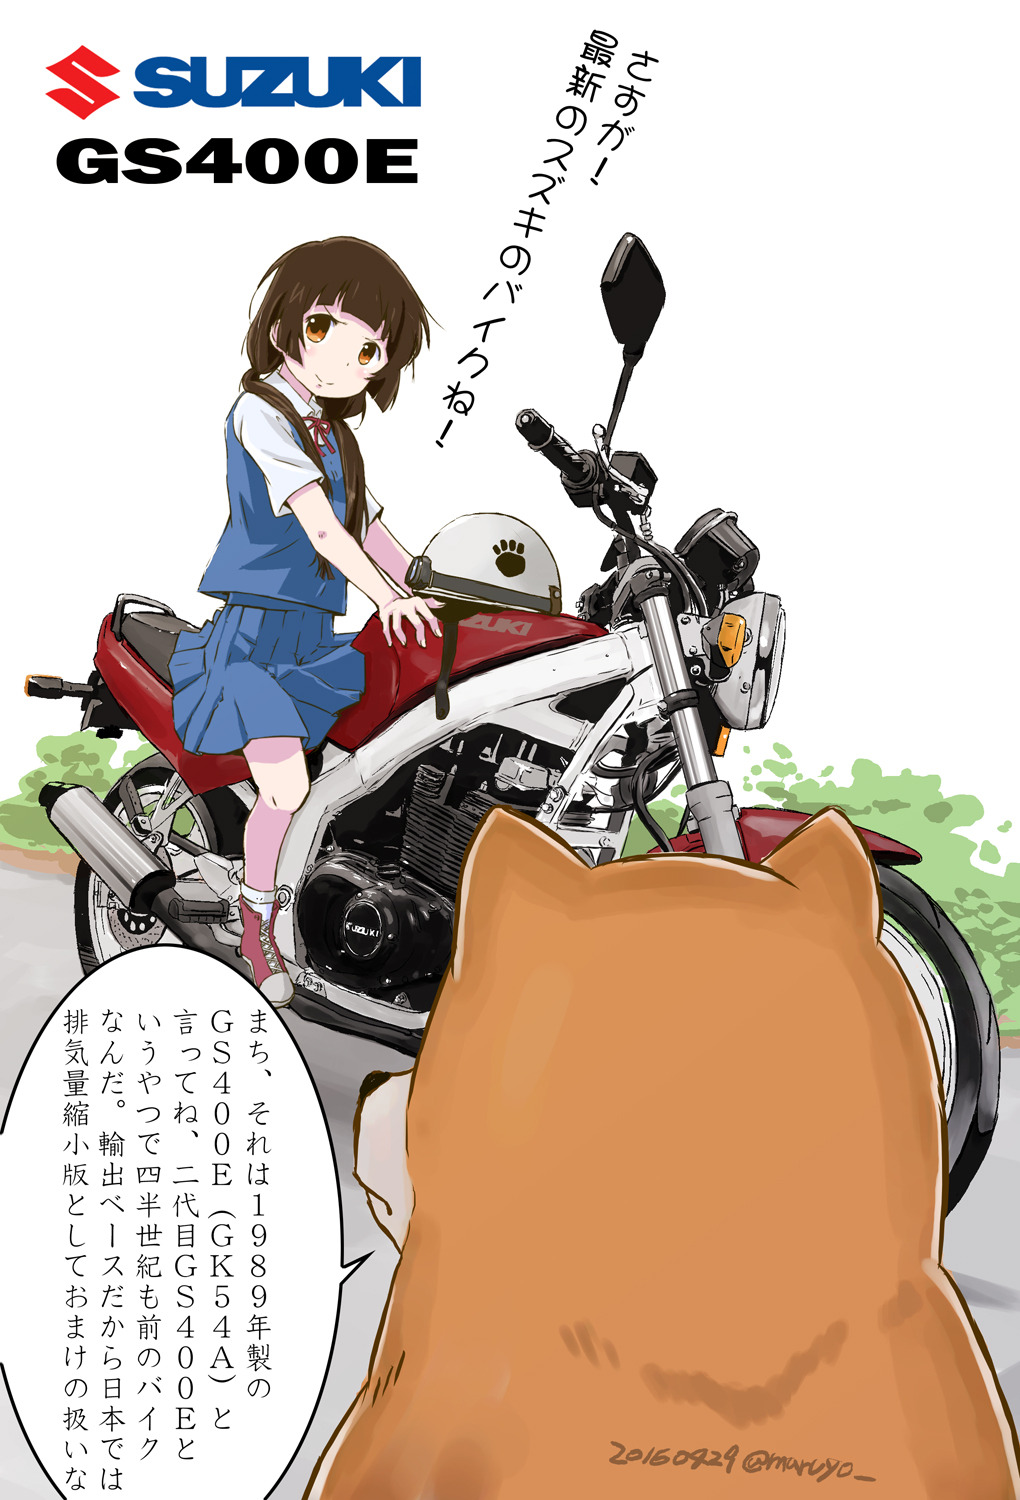 Untitled Title くまみこ4話のバイク Suzuki Gs400e まるよ5 5コミティアm24a の作品